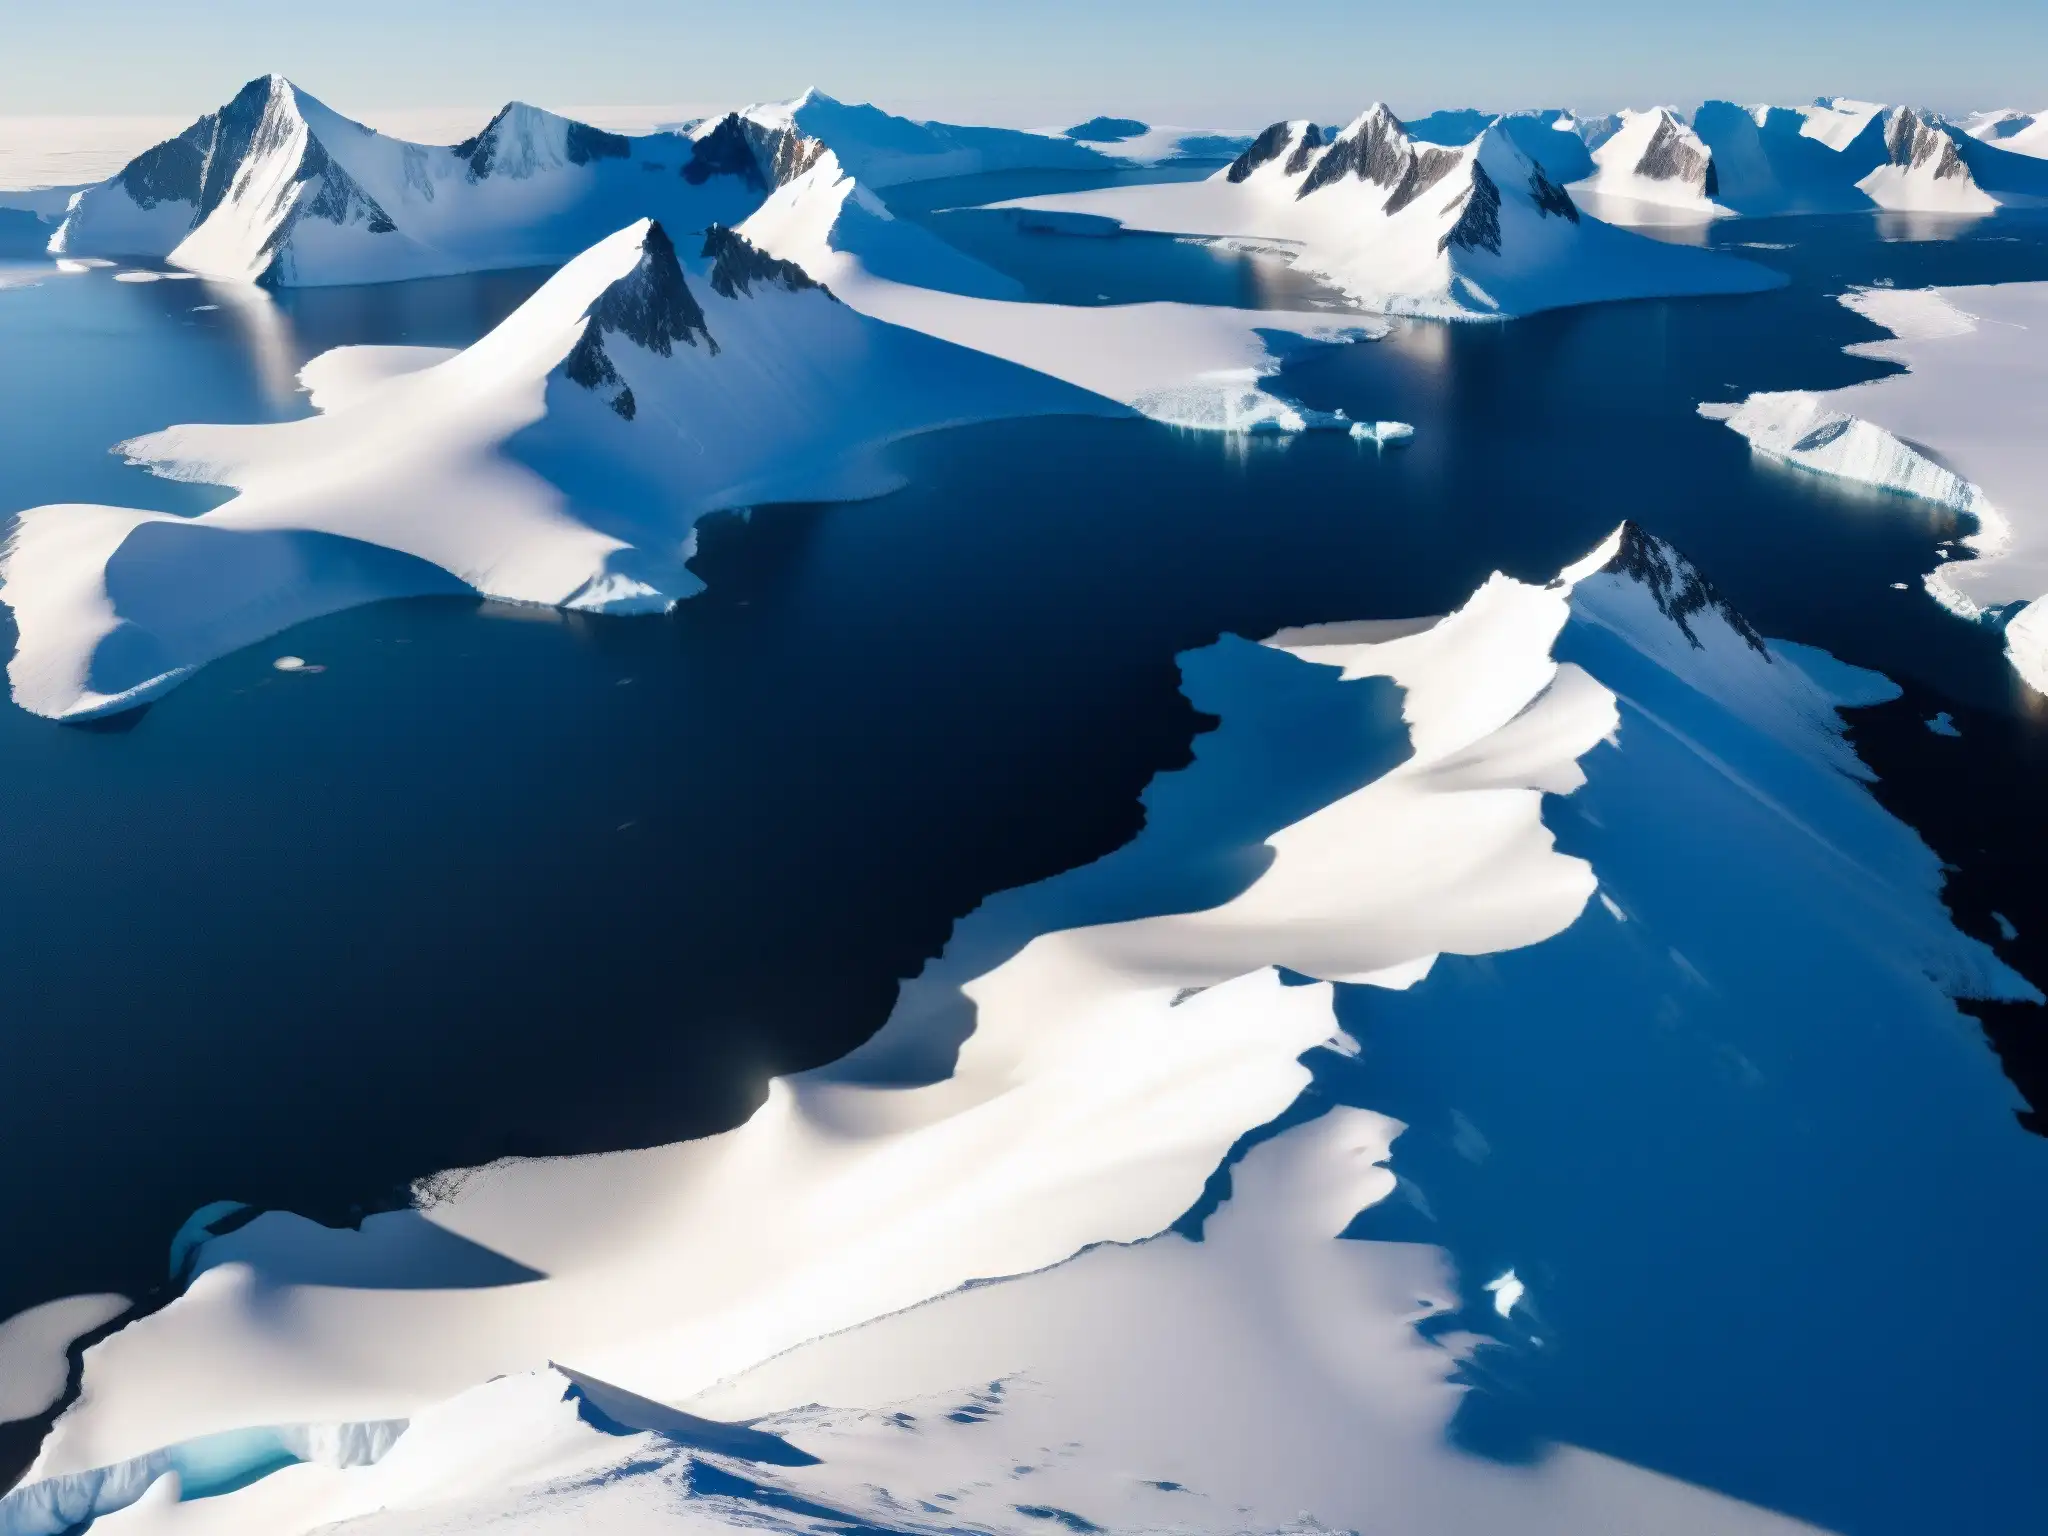 Imagen aérea de la Antártida con vasto paisaje helado, montañas escarpadas y estación de investigación, evocando misterios de bases alienígenas Antártida mitos leyendas